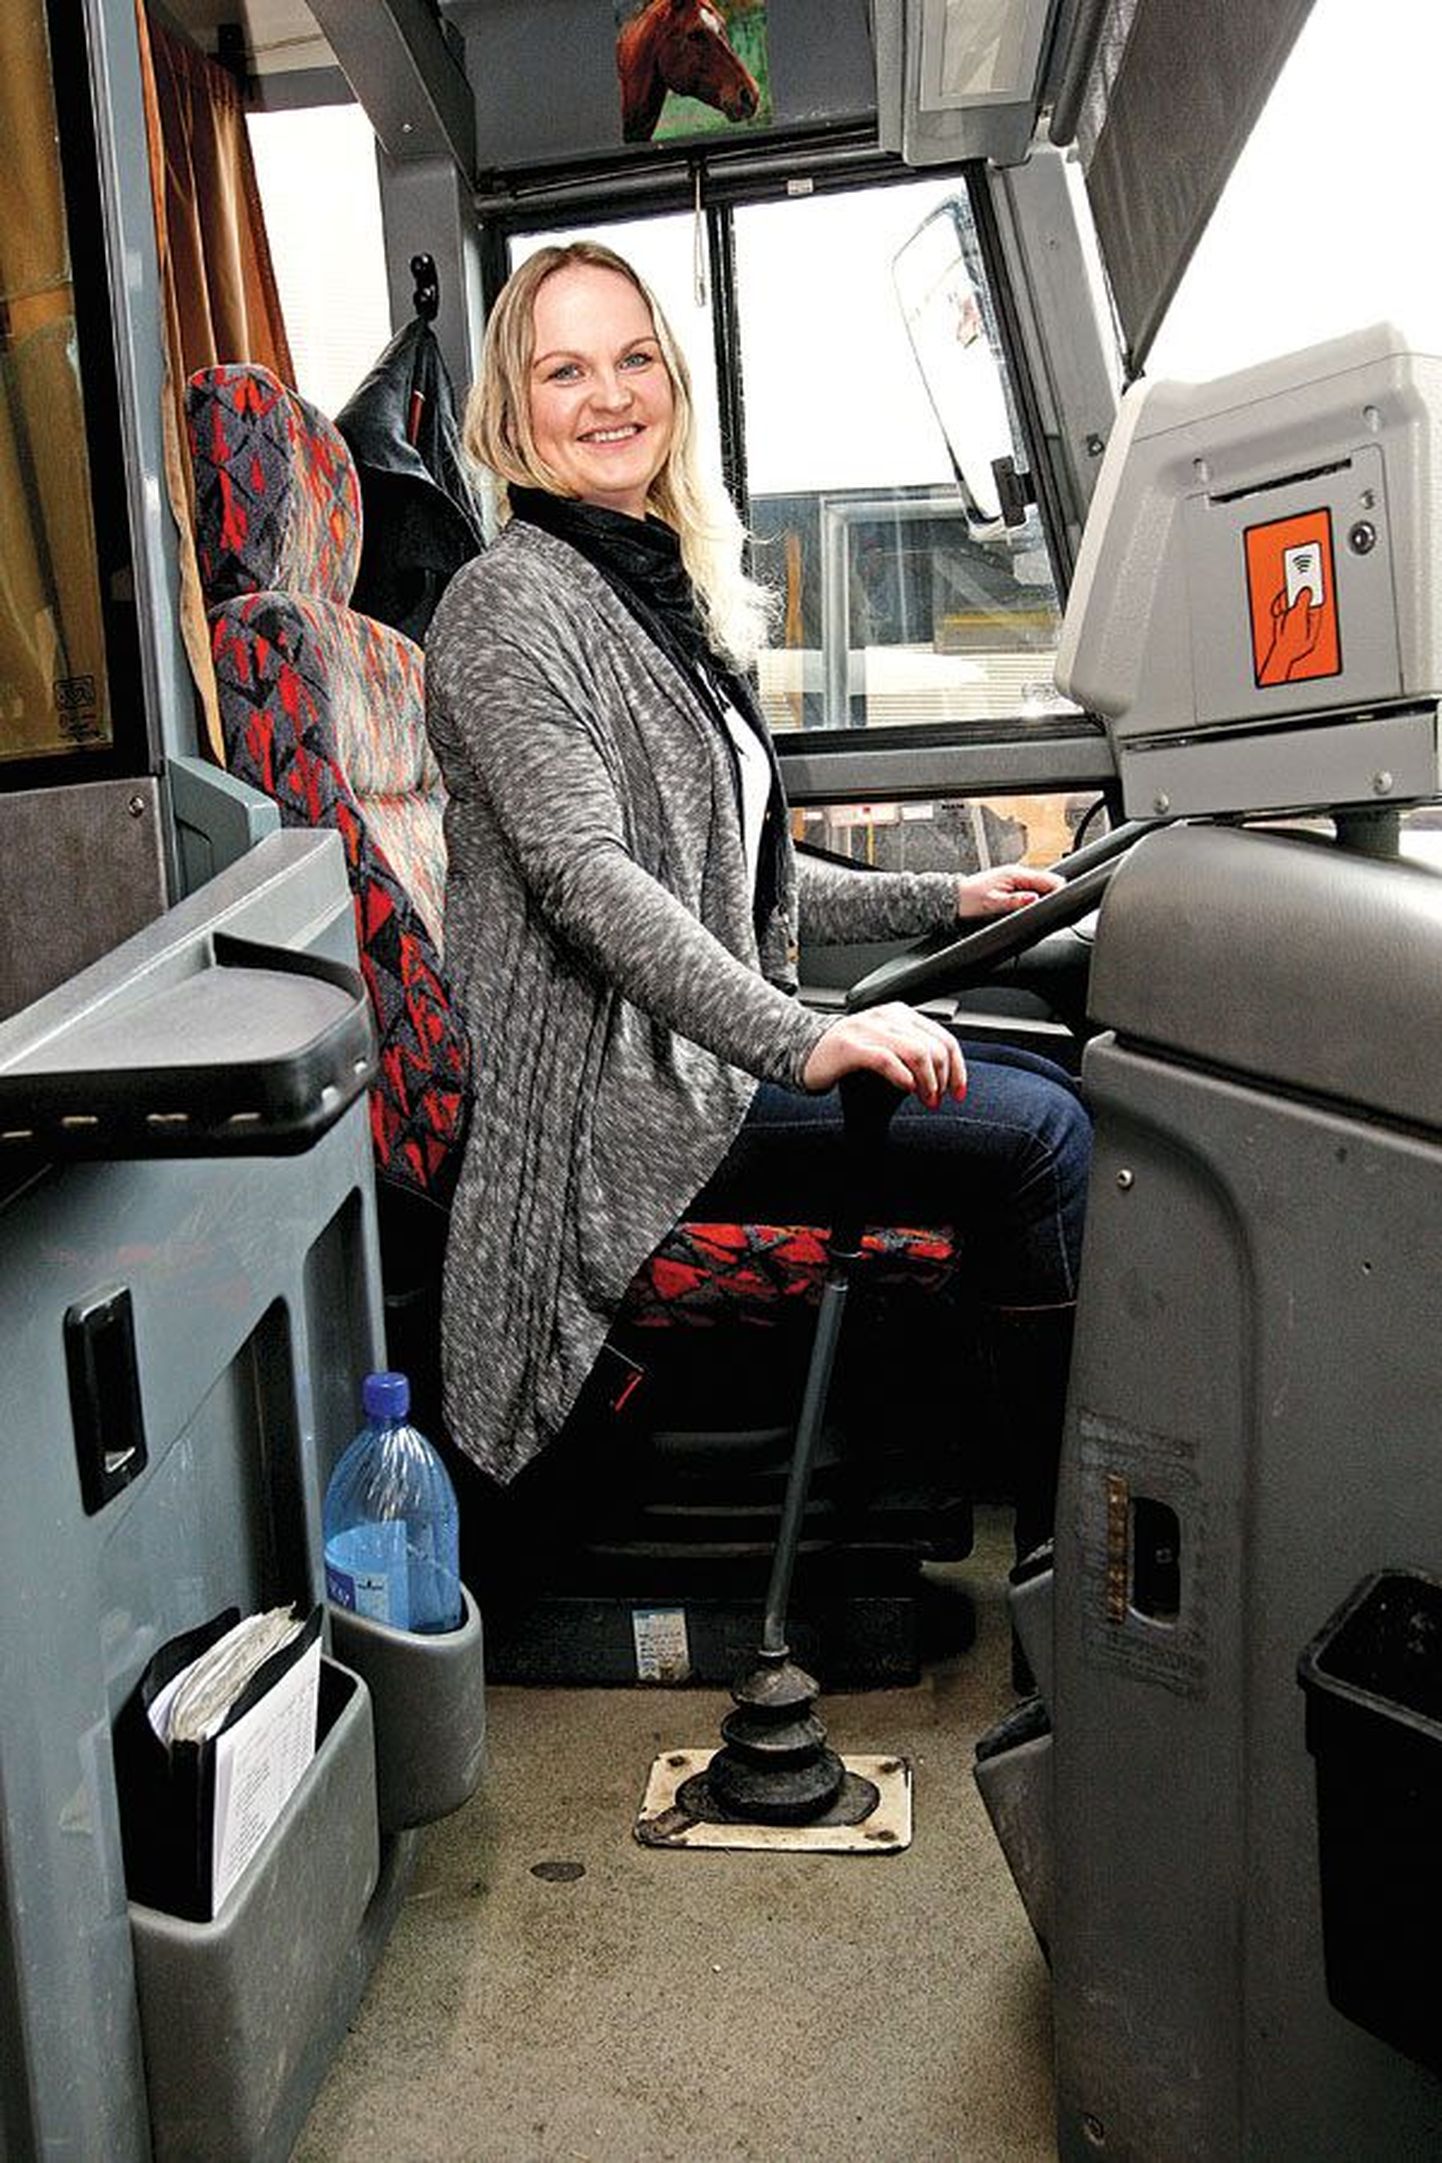 В конце апреля Кайри Юргенсон исполнится 30 лет. Профессию водителя автобуса она считает одной из самых приятных. «Знай себе крути баранку и ничего больше», — с улыбкой говорит она, оставляя за рамками сложности своей профессии.